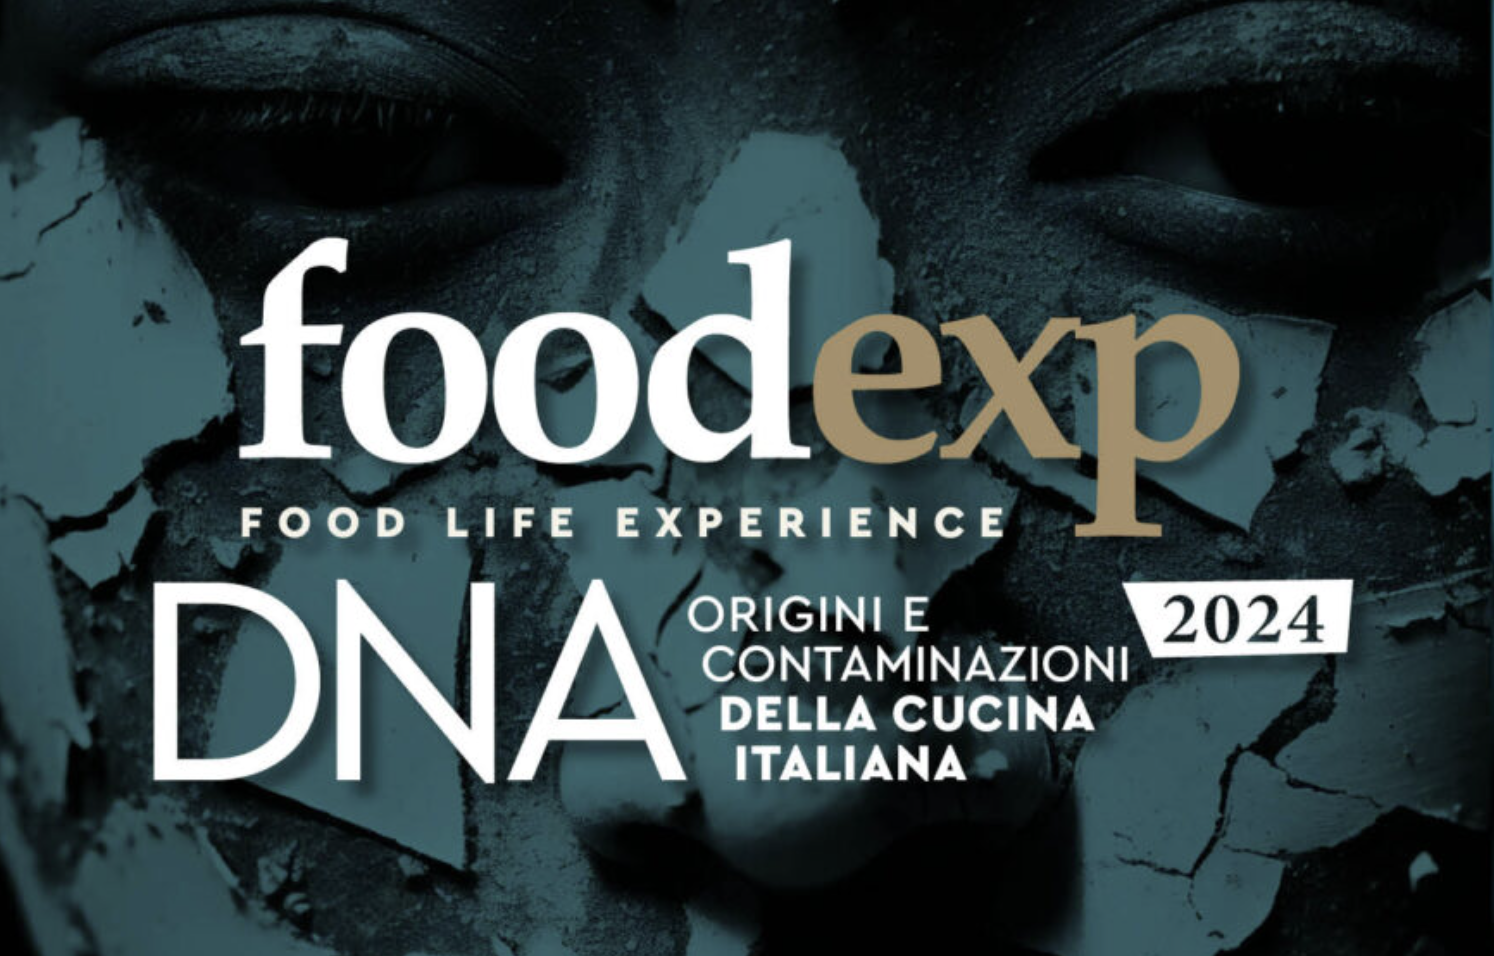 FOODEXP ’24: DNA, ORIGINI E CONTAMINAZIONI DELLA CUCINA ITALIANA